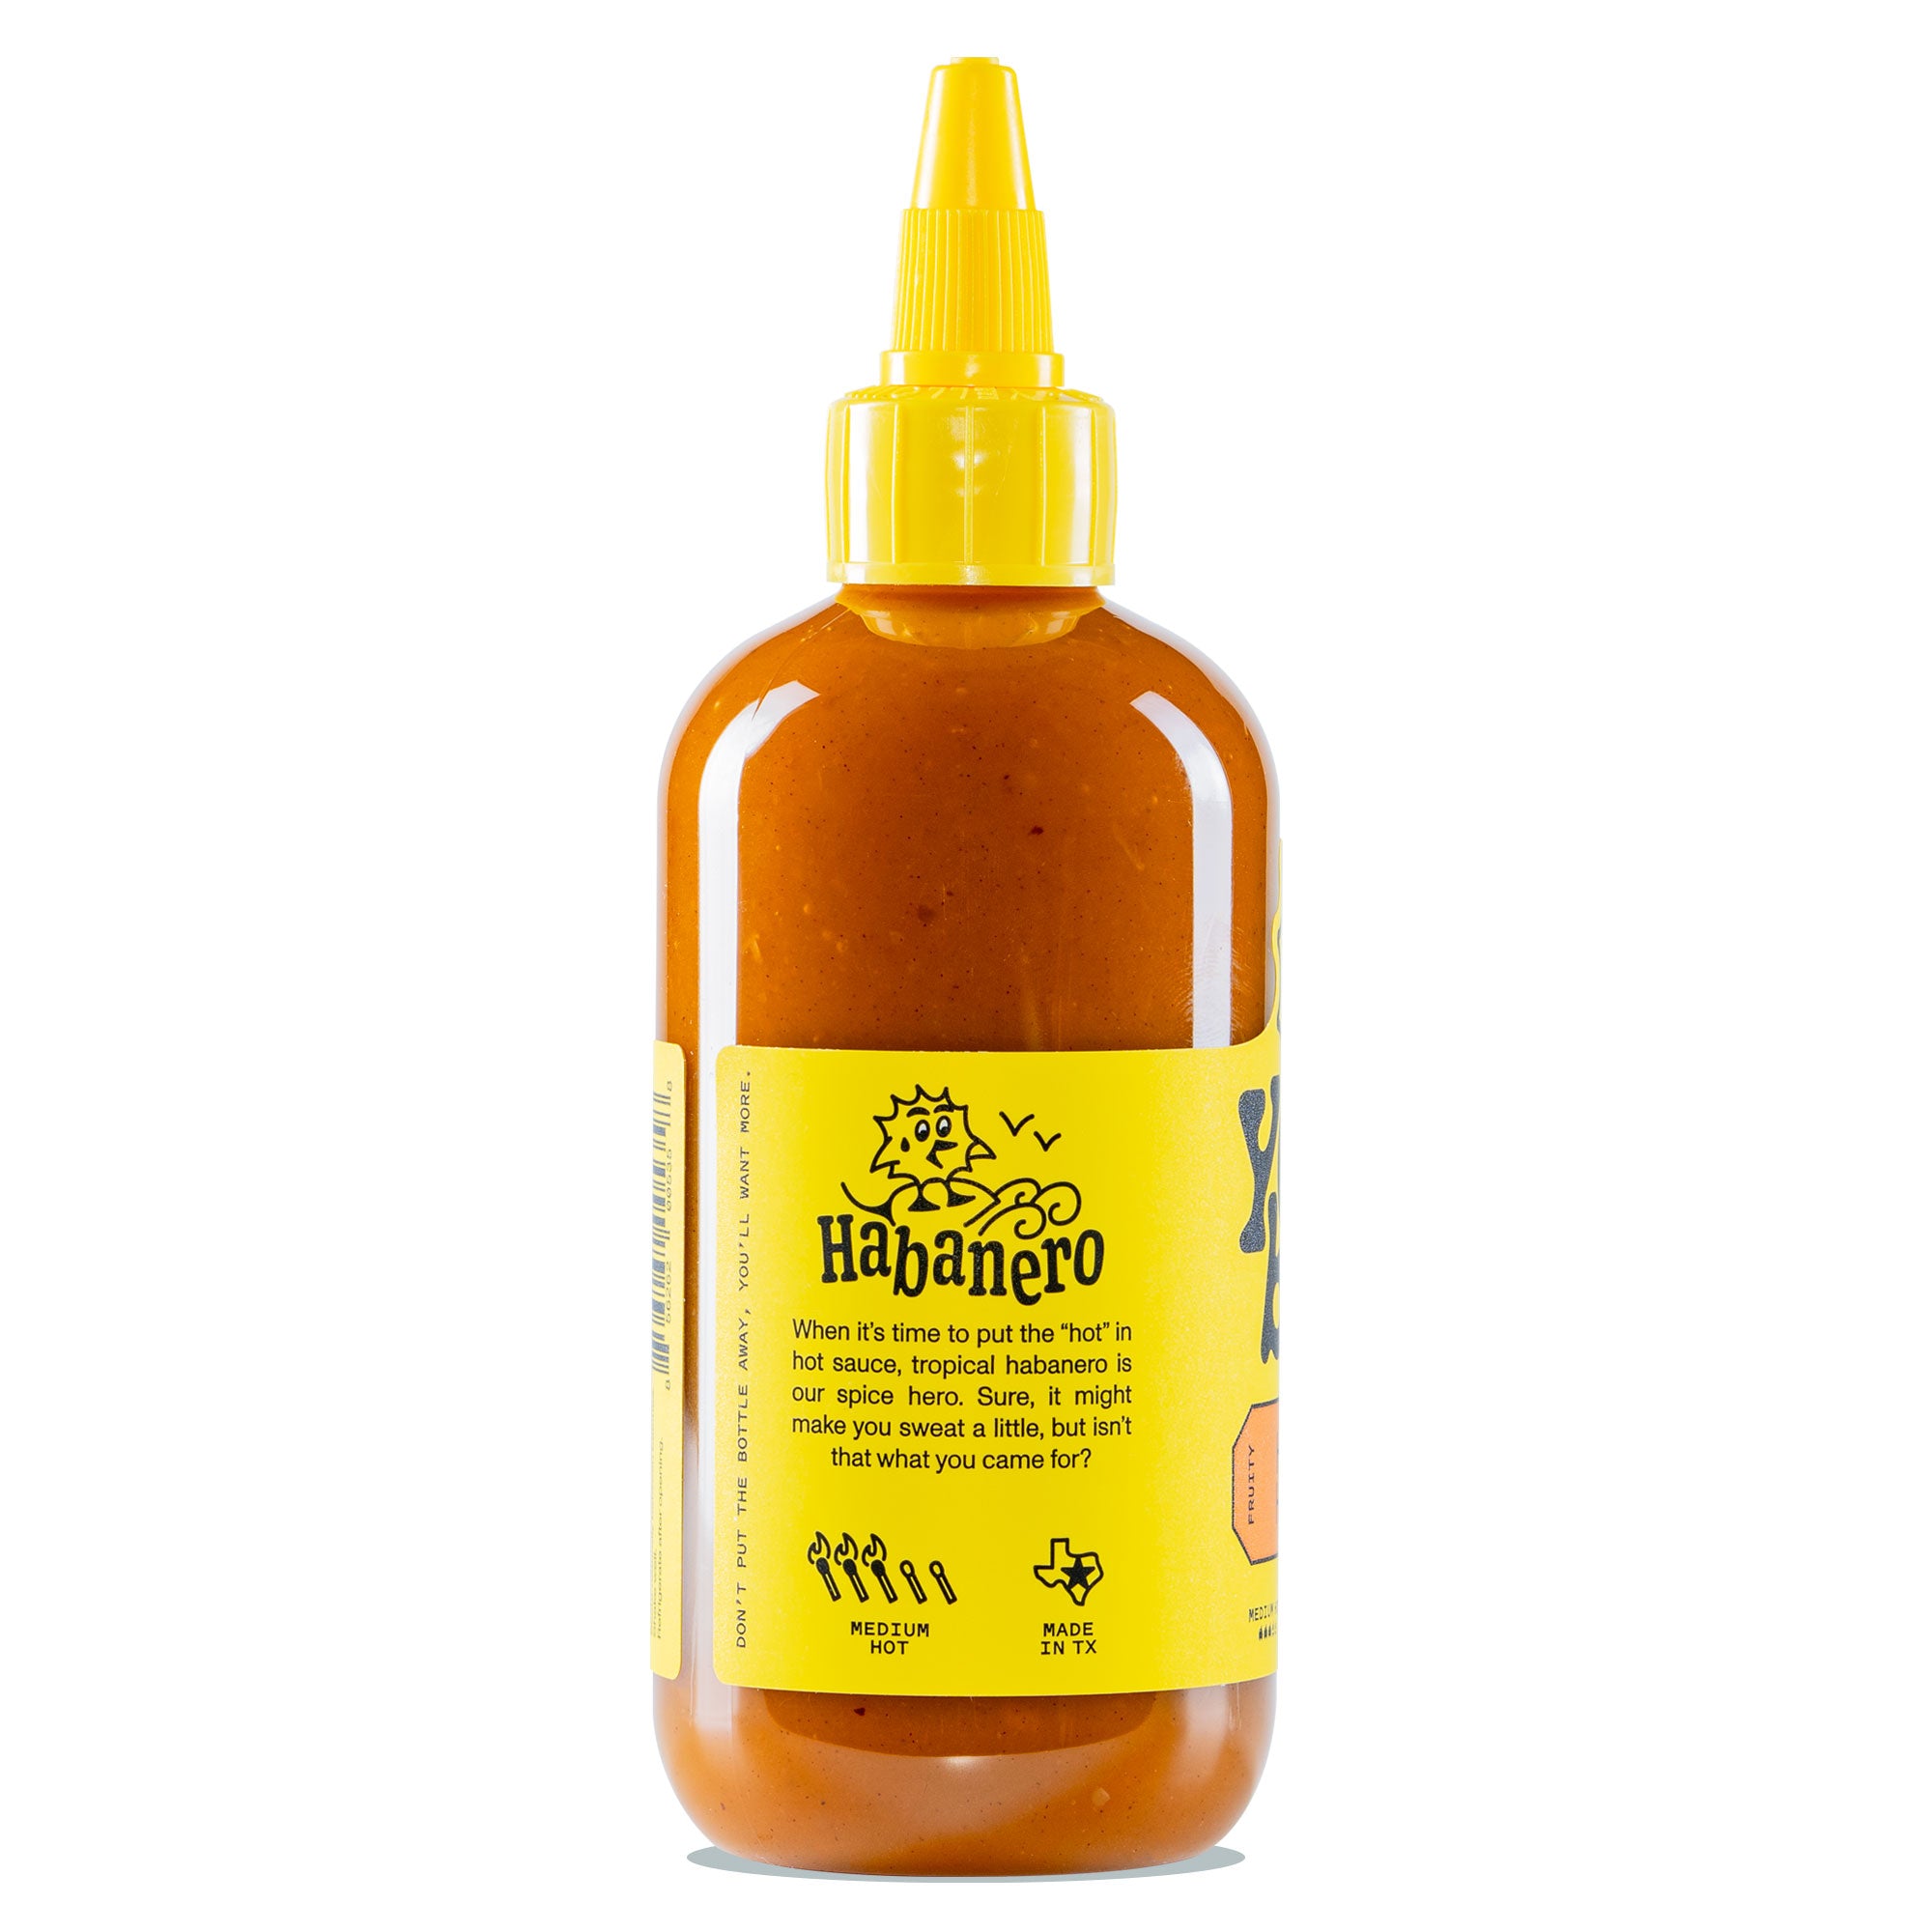 Yellowbird Organic Habanero Hot Sauce 9.8 oz. description